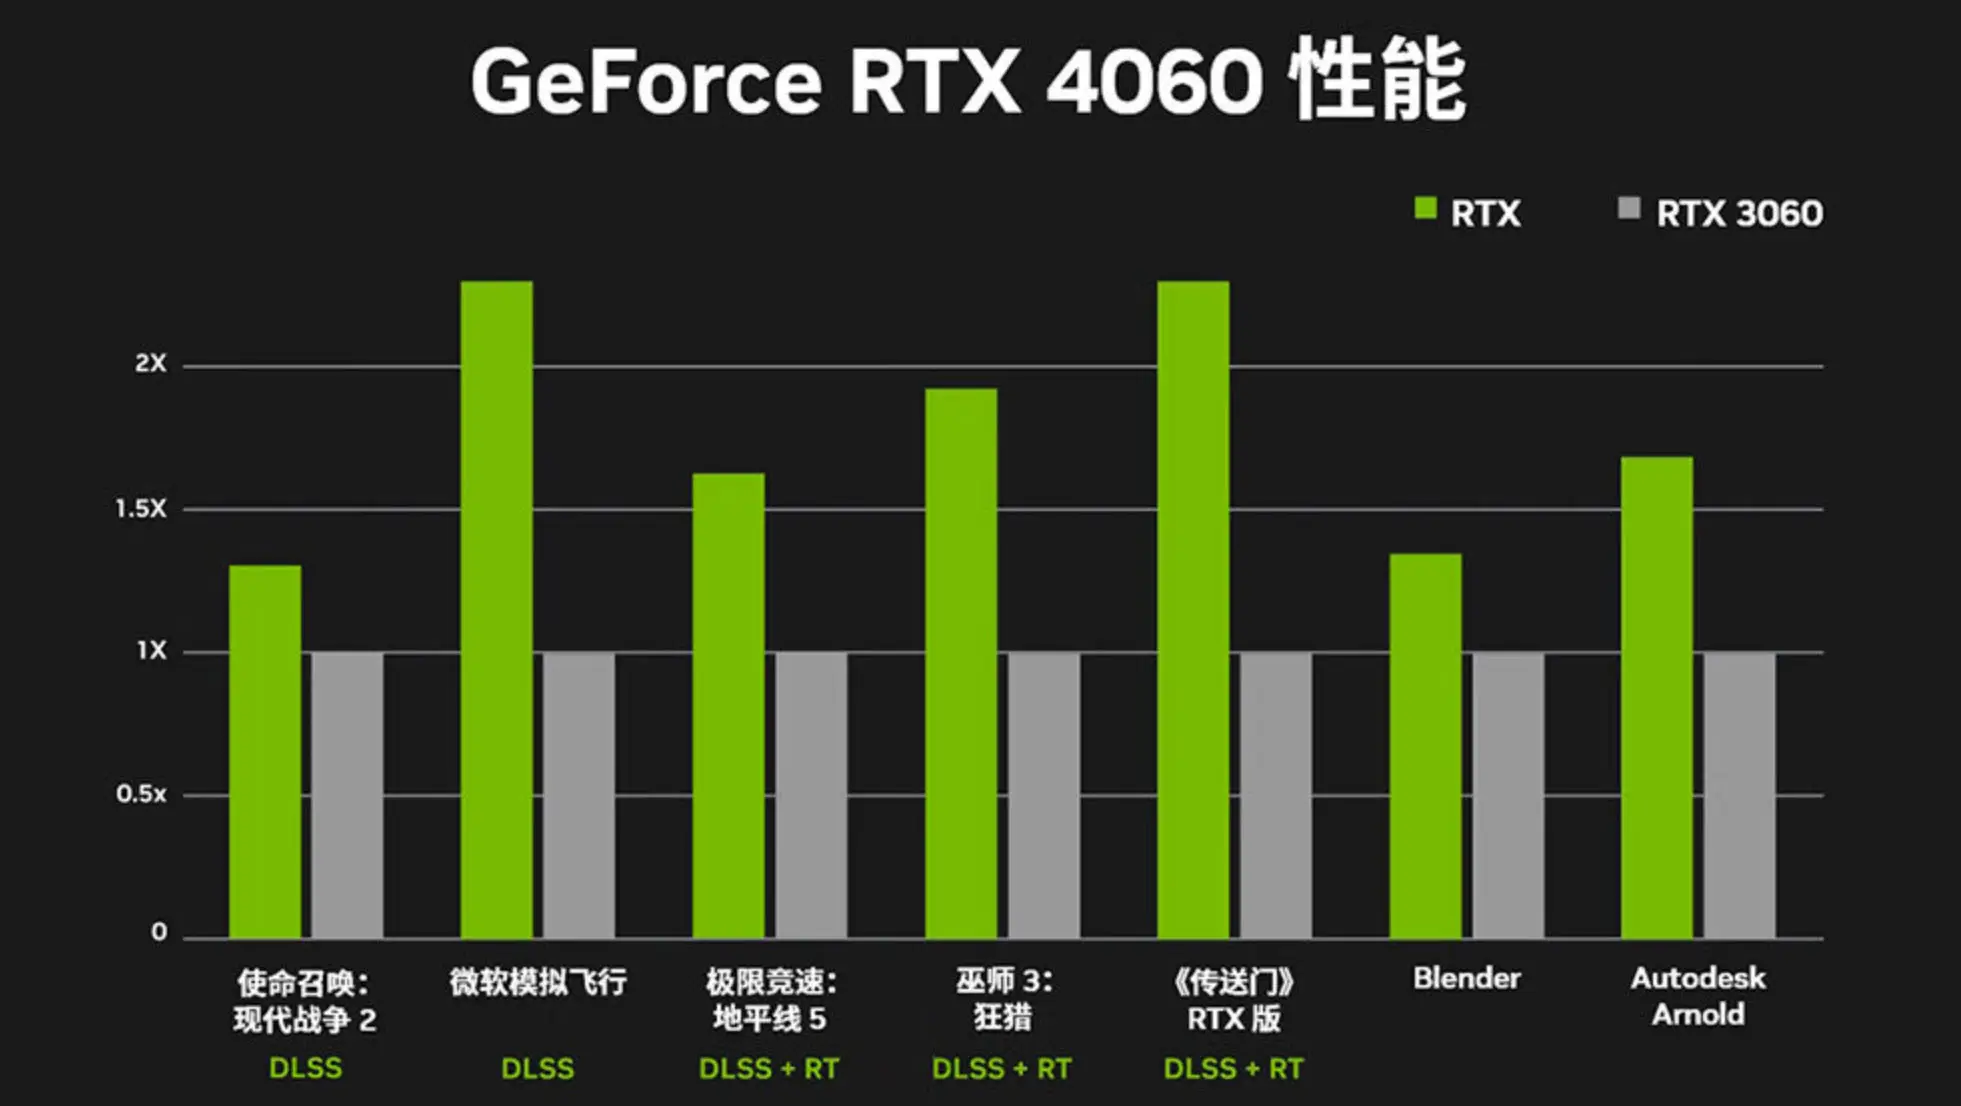 GT1030 2GB显卡笔记本性能评测及性价比对比：全面解析中低端显卡配置  第4张